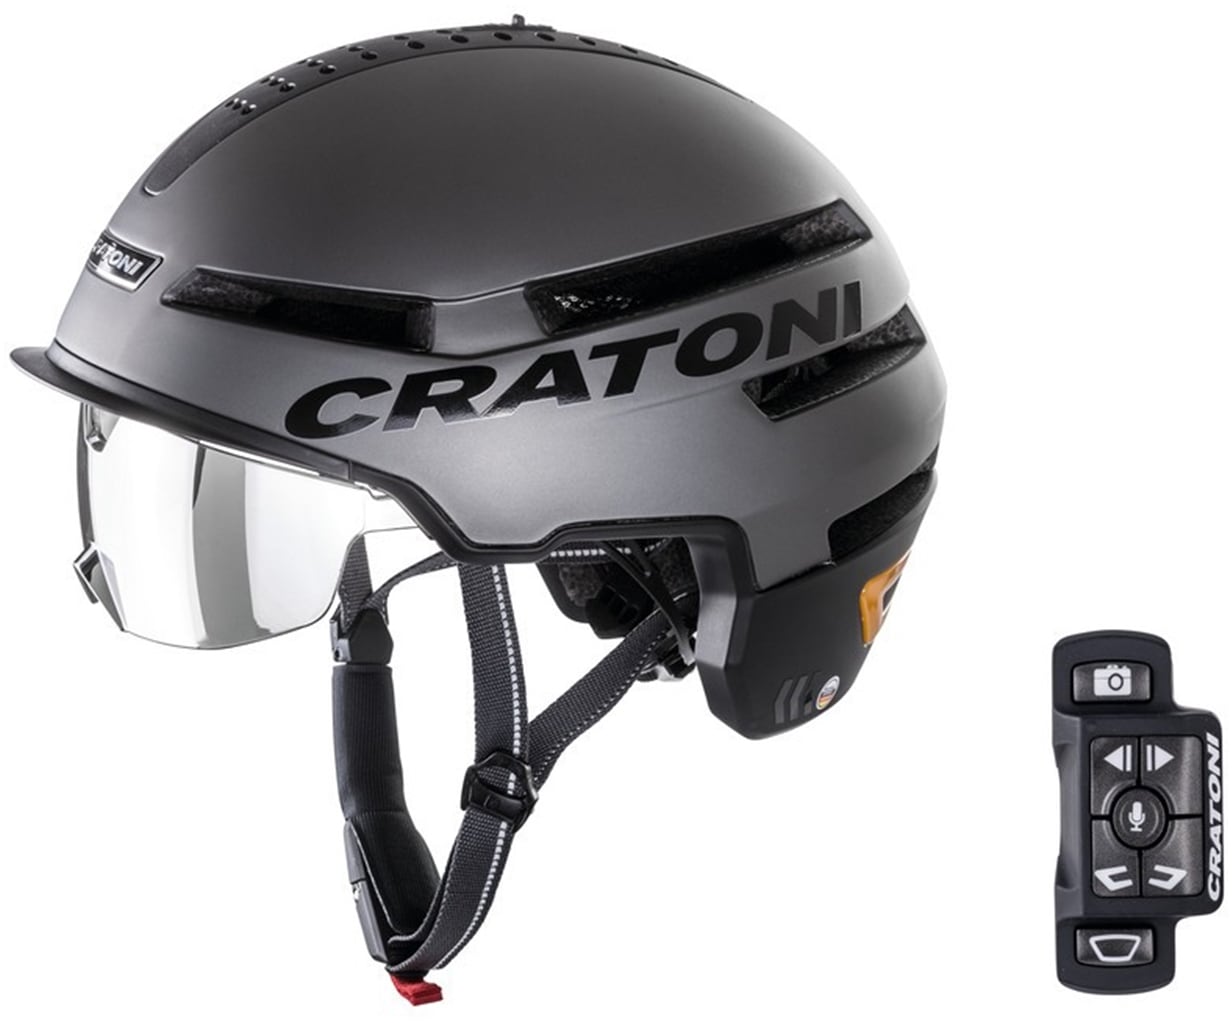 Cratoni Fahrradhelm "Pedelec Helm Smartride", eingebautes Rücklicht und Blinker, mit Fernbedienung